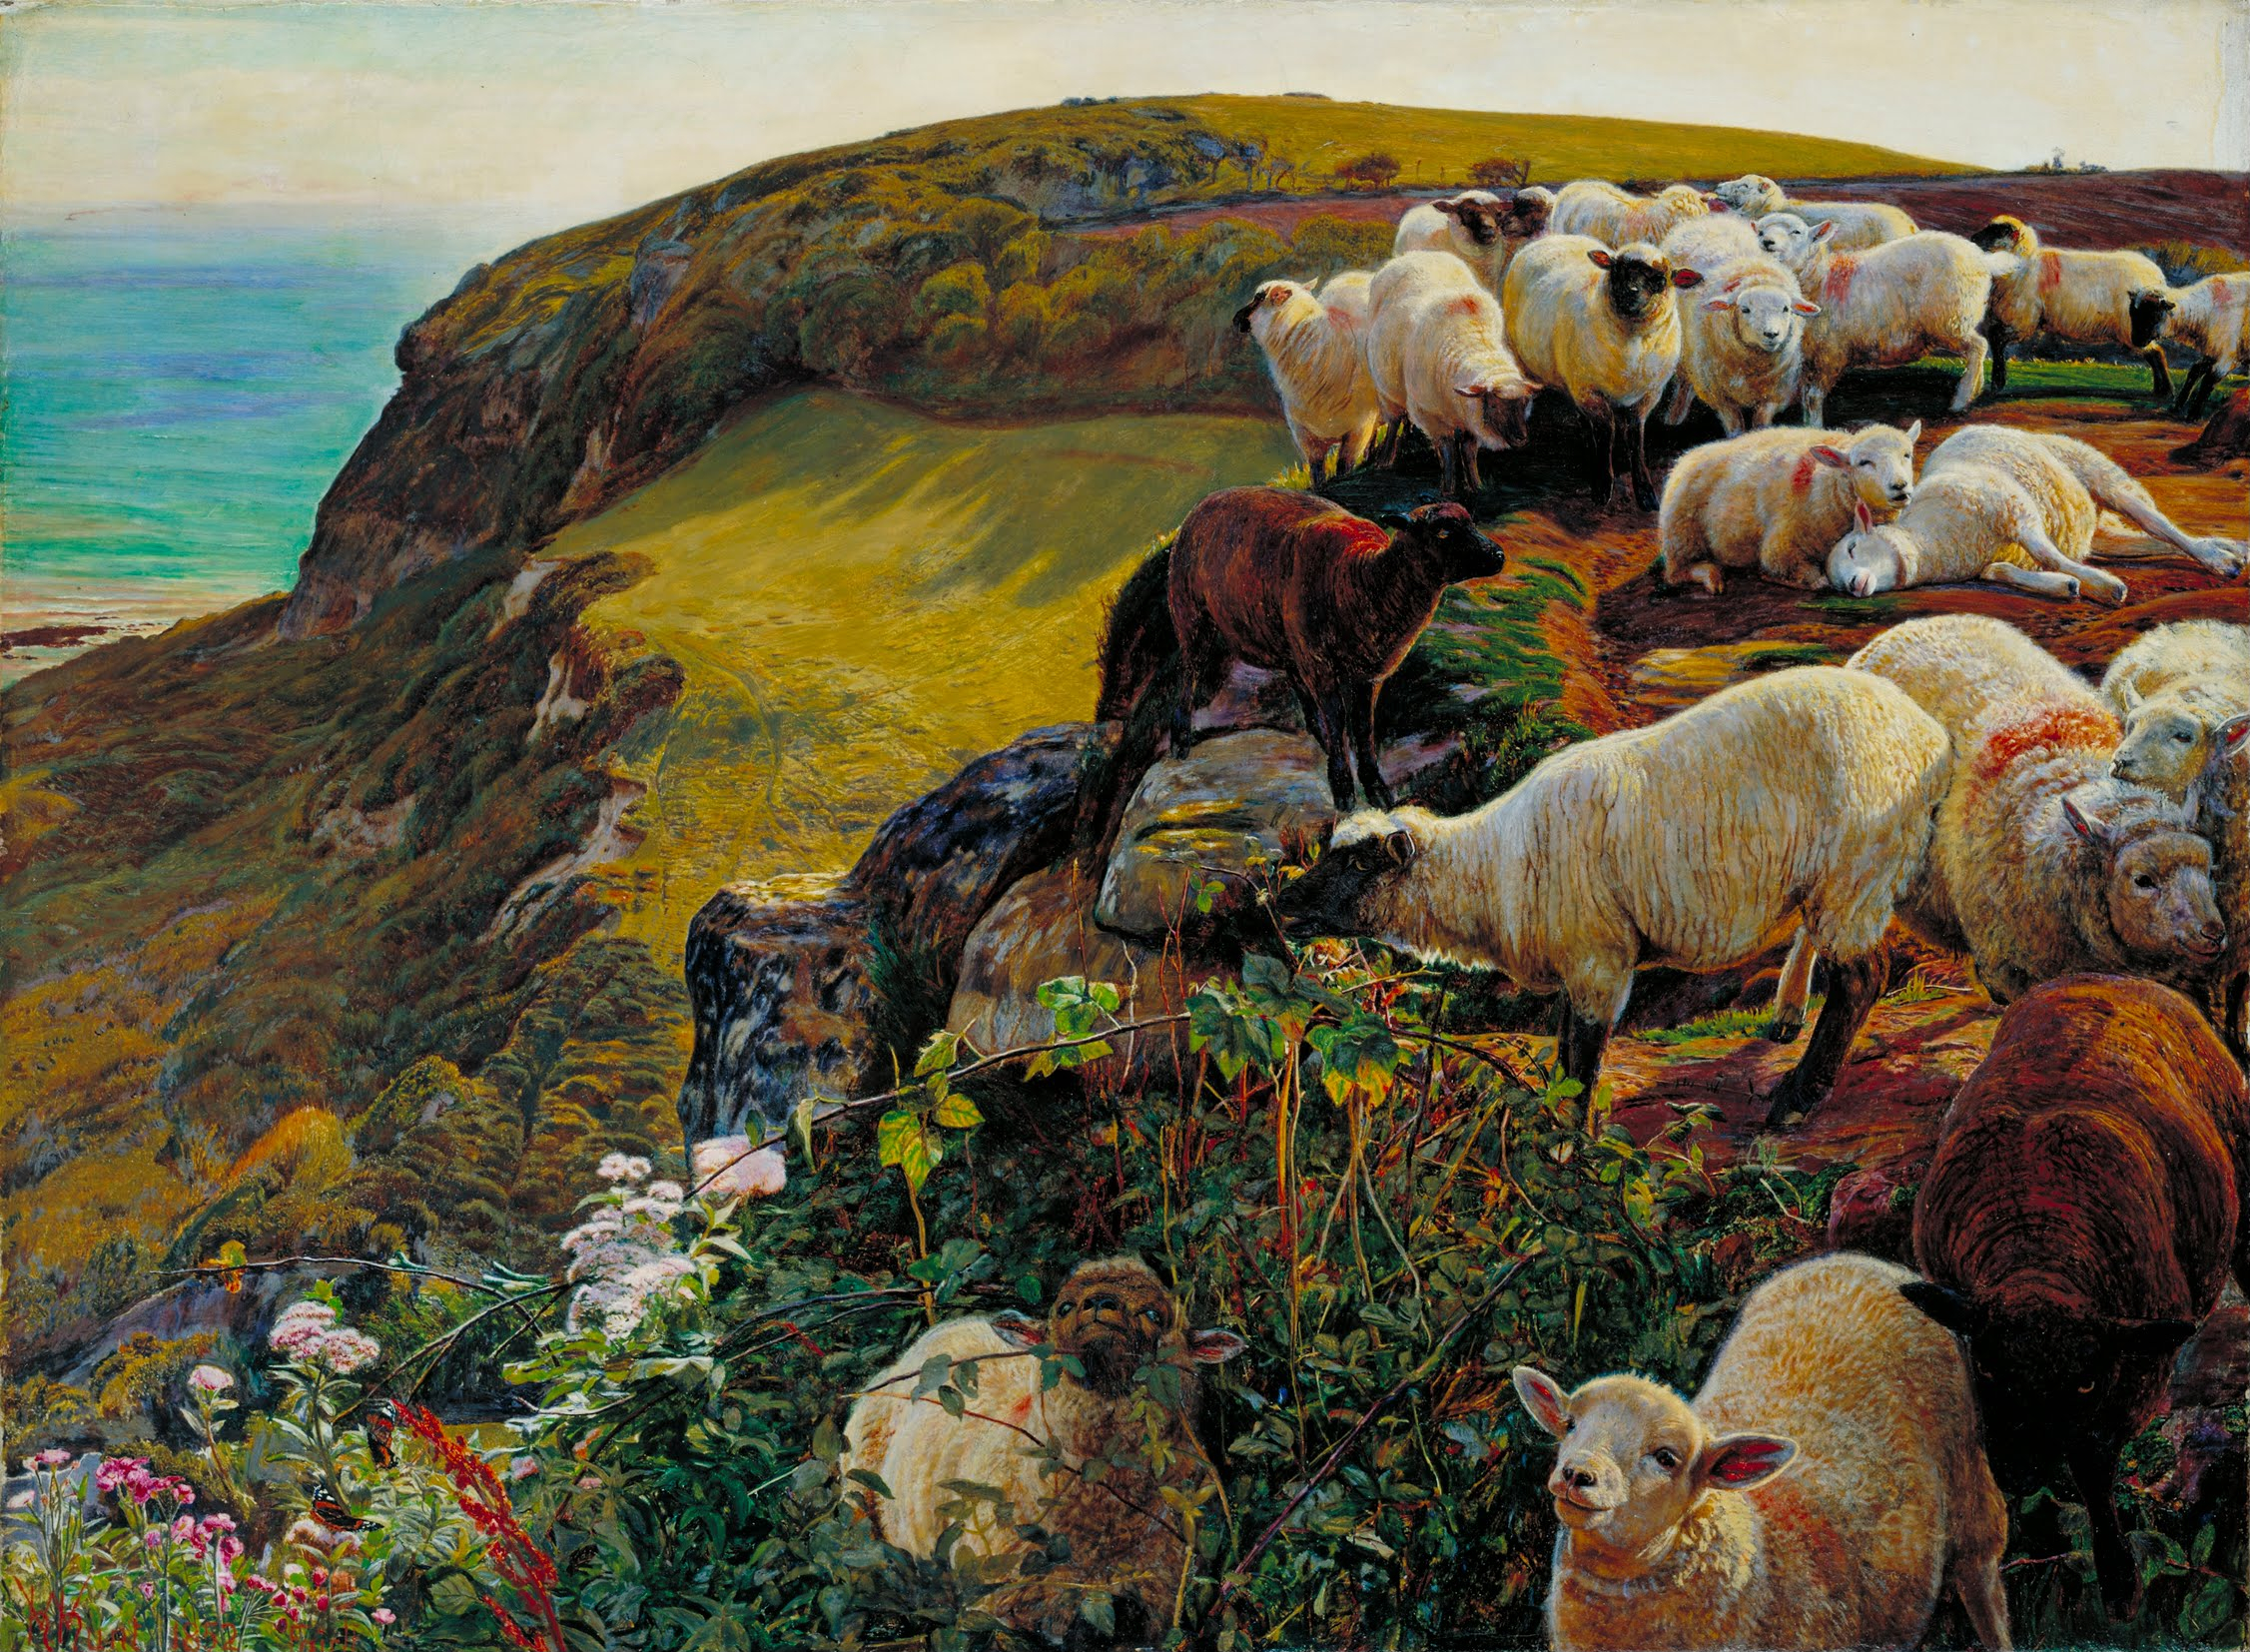 我們的英國海岸，1852年（「流浪的羊」） by William Holman Hunt - 1852 年 - 58.4 x 43.2 釐米 